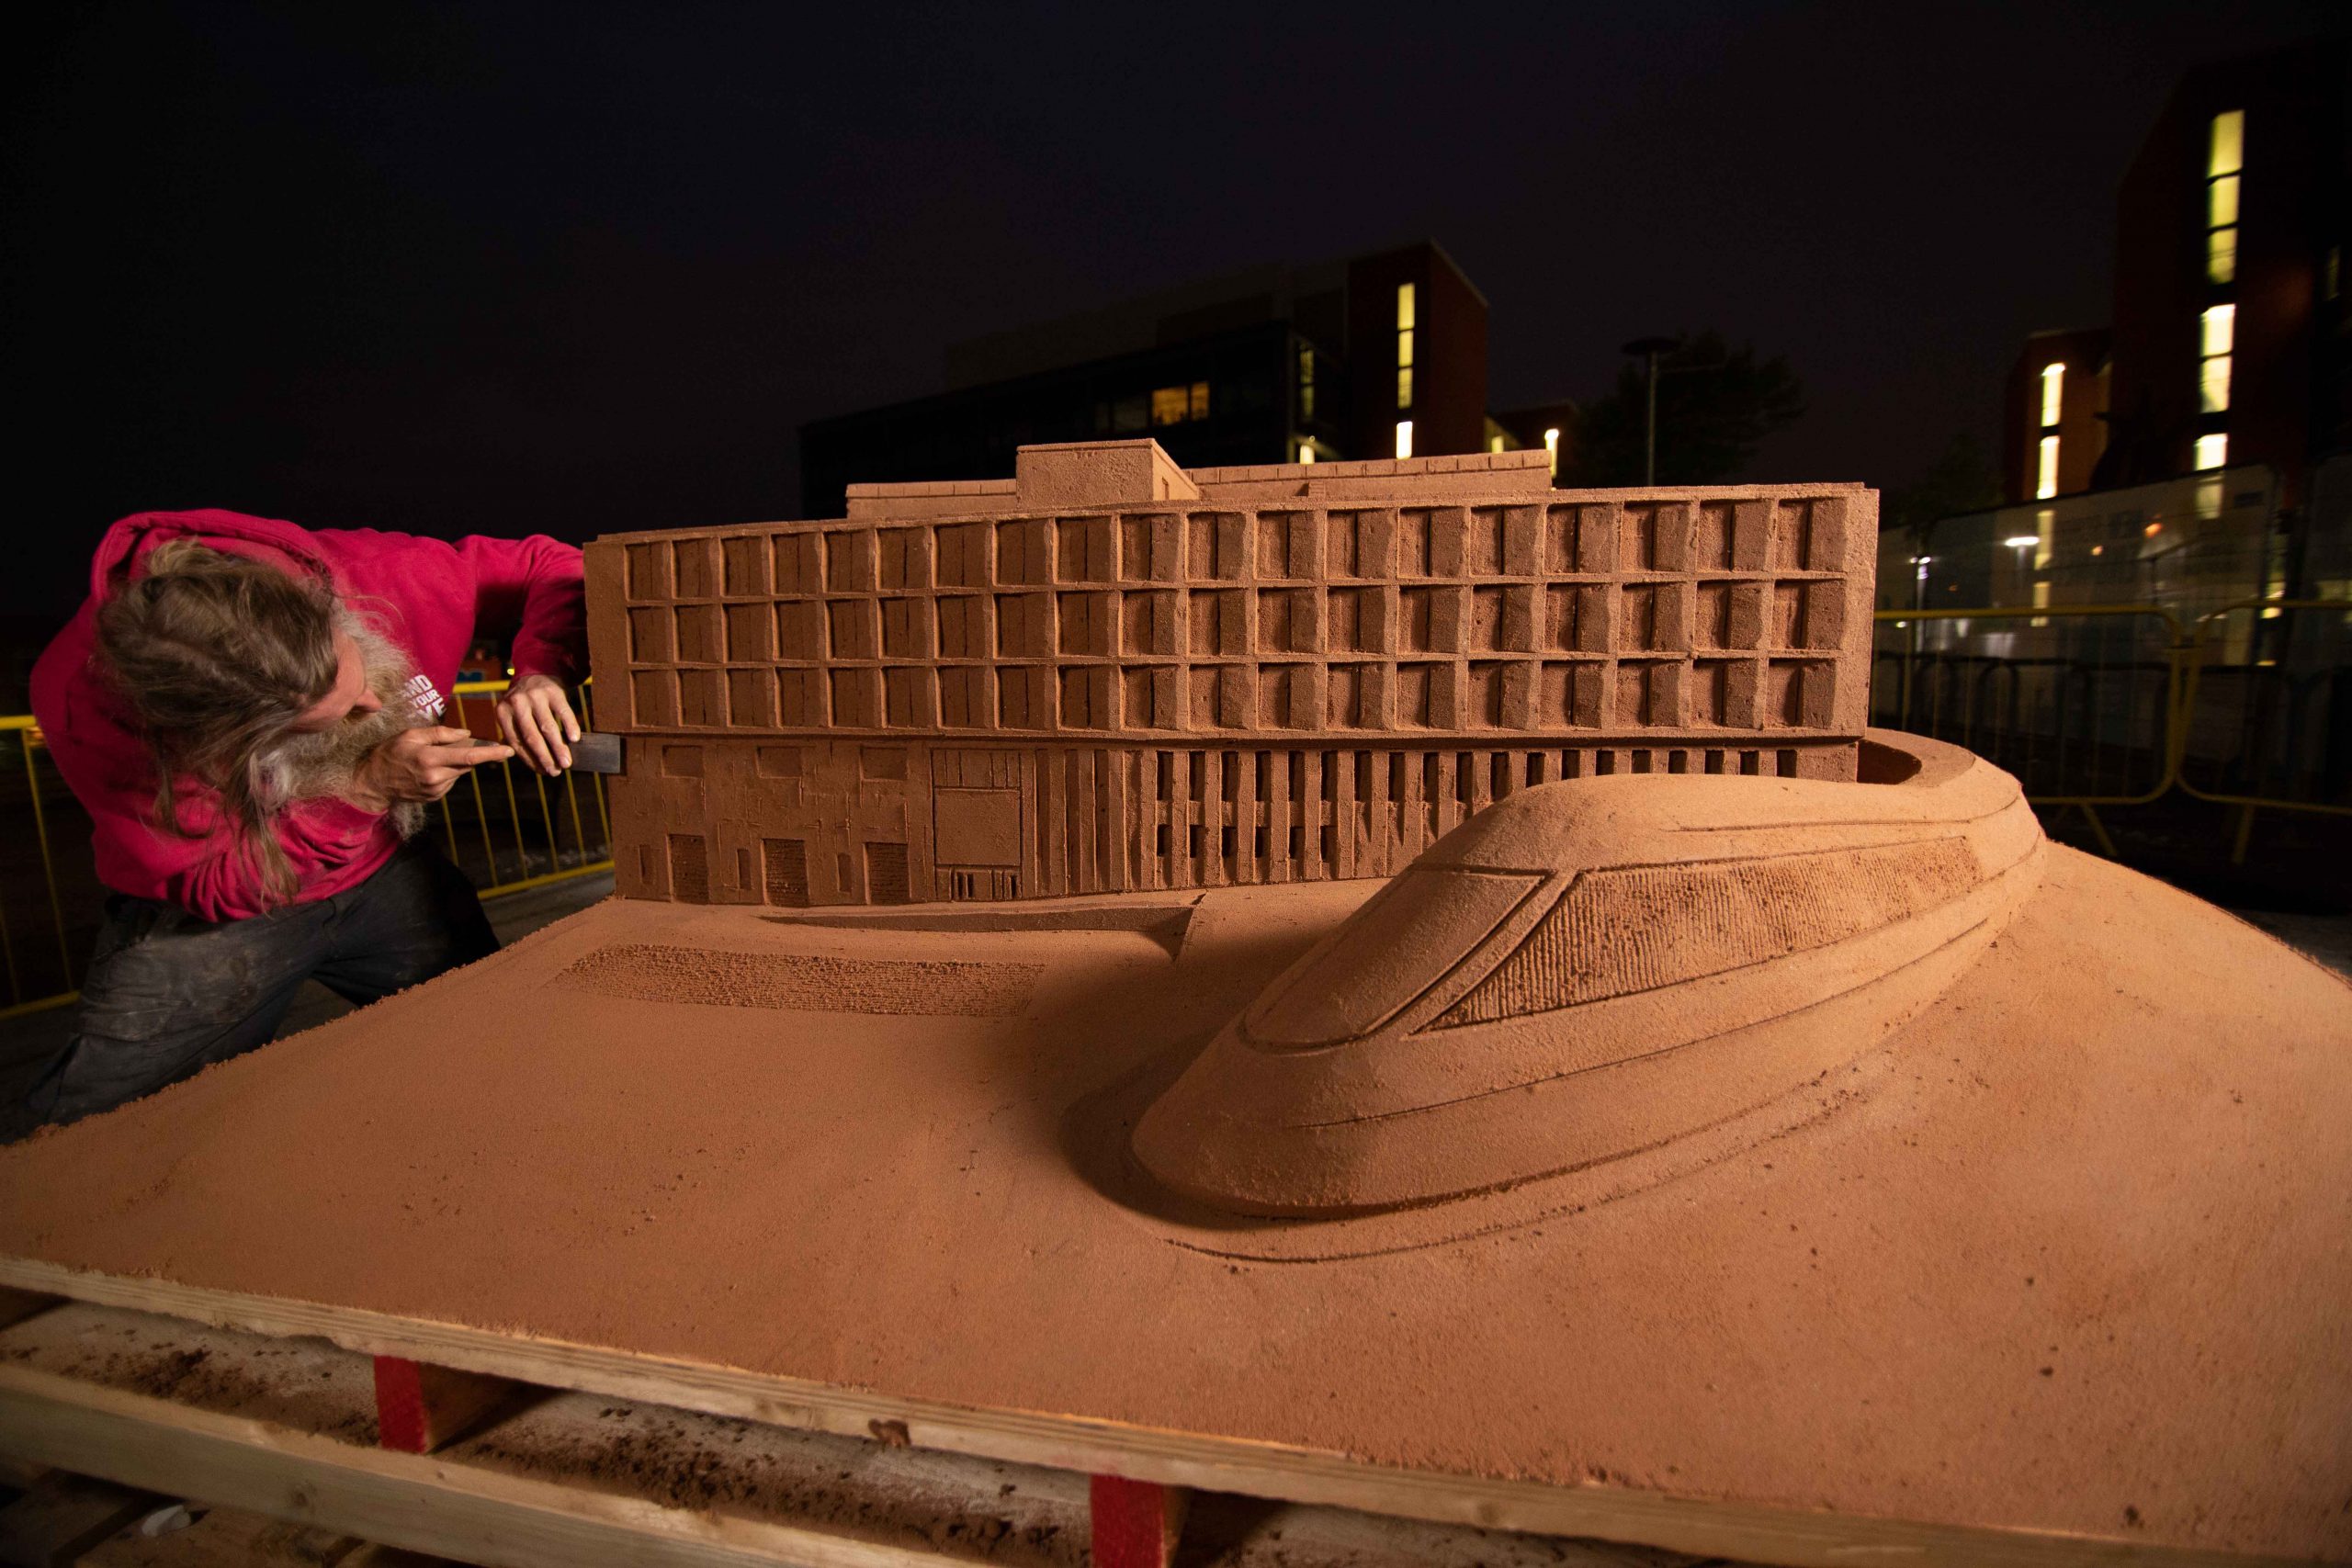 Sand Sculpture of the University of Birmingham’s new School of Engineering building